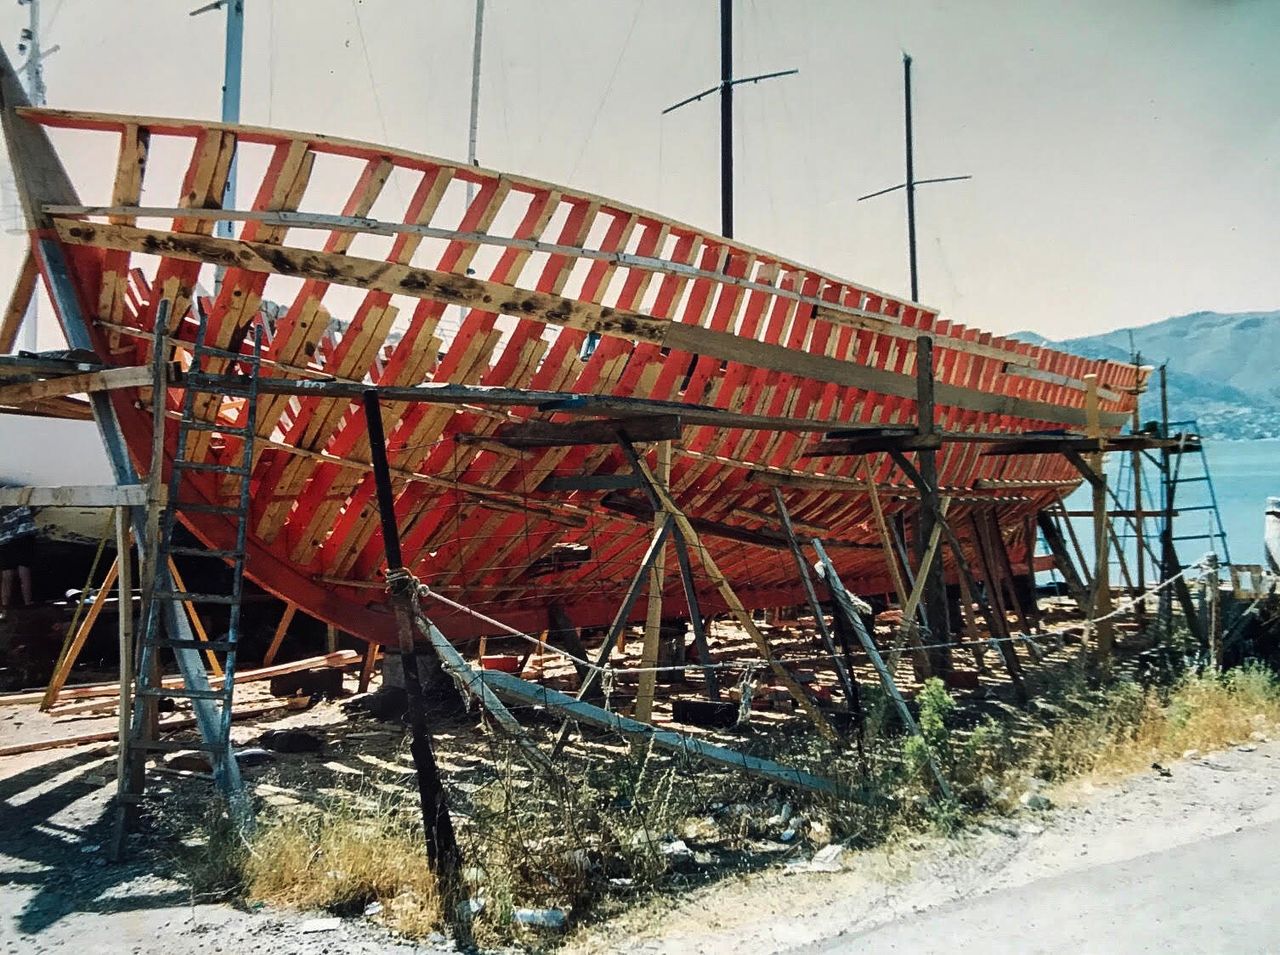 Ο Γιάννης Πράσινος εξακολουθεί να κατασκευάζει ξύλινα σκάφη. Η θαλασσινή αρχιτεκτονική της Ελλάδας συνεχίζει να παράγει εξαίσια δείγματα μιας παράδοσης αιώνων.